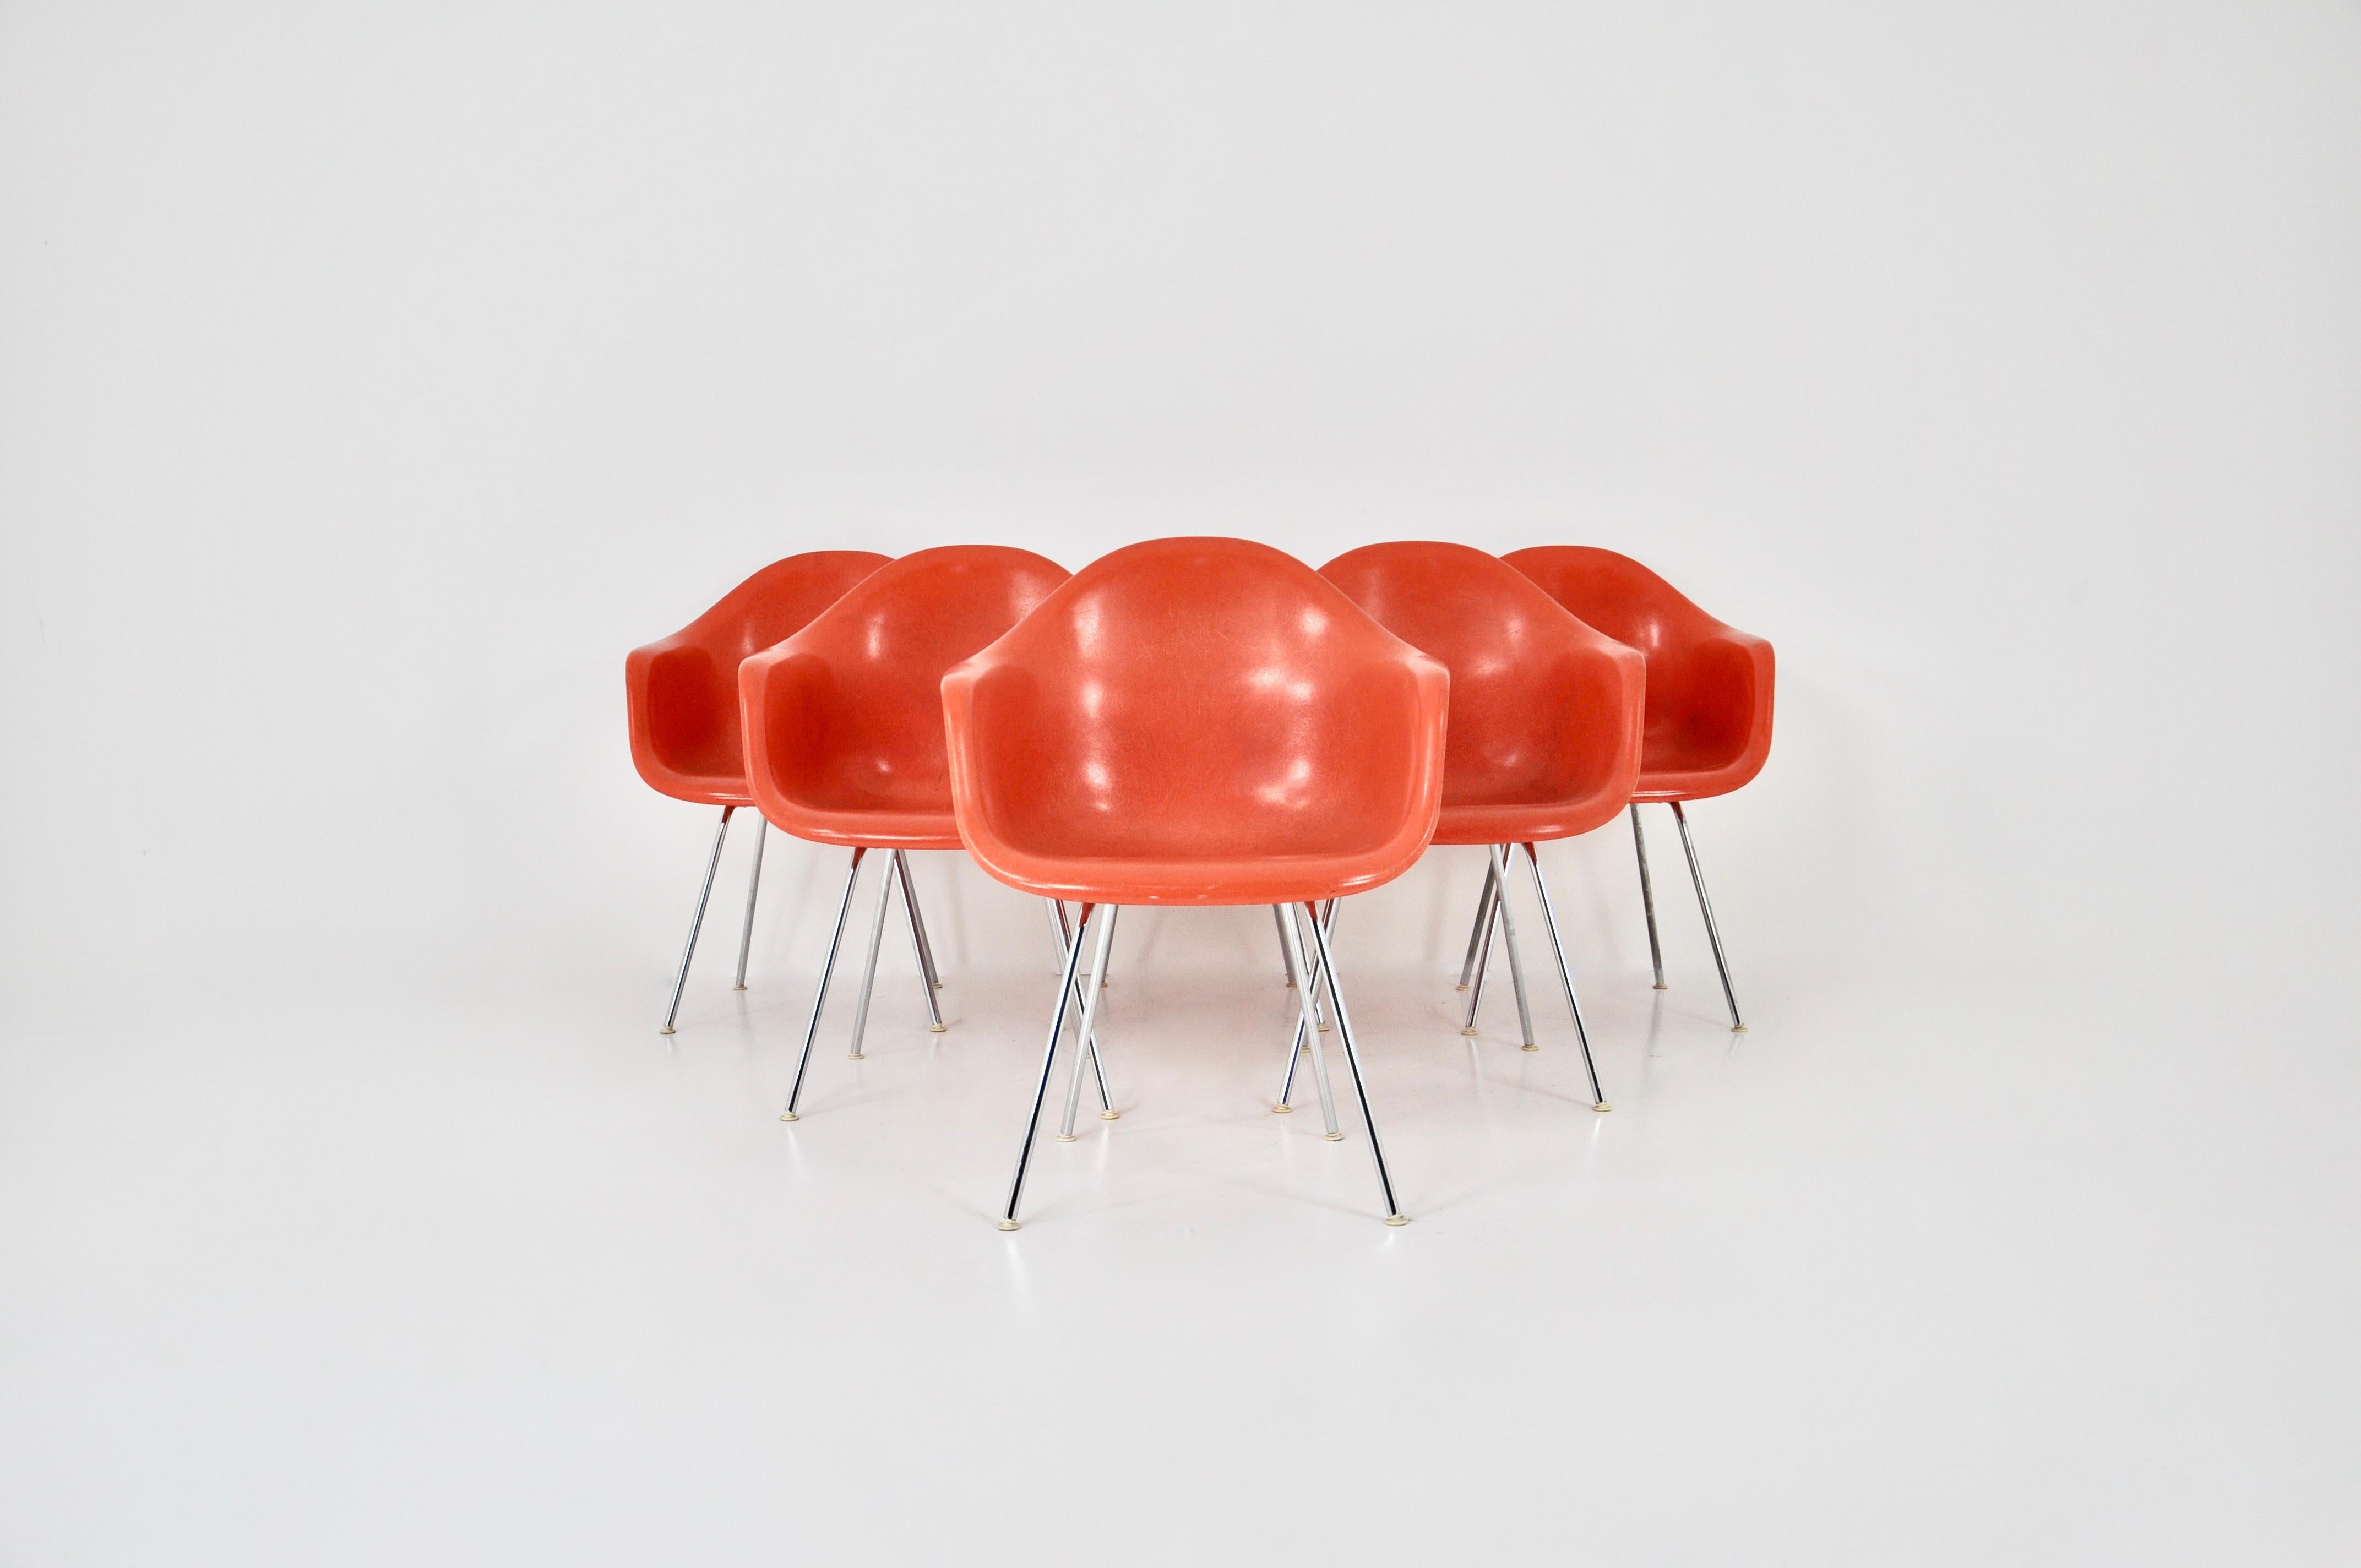 Satz von 6 Stühlen aus Fiberglas in orange Farbe mit verchromten Metallbeinen. Auf der Unterseite gestempelt H by Herman Miller. Abnutzung durch Zeit und Alter der Stühle. Sitzhöhe: 43 cm.